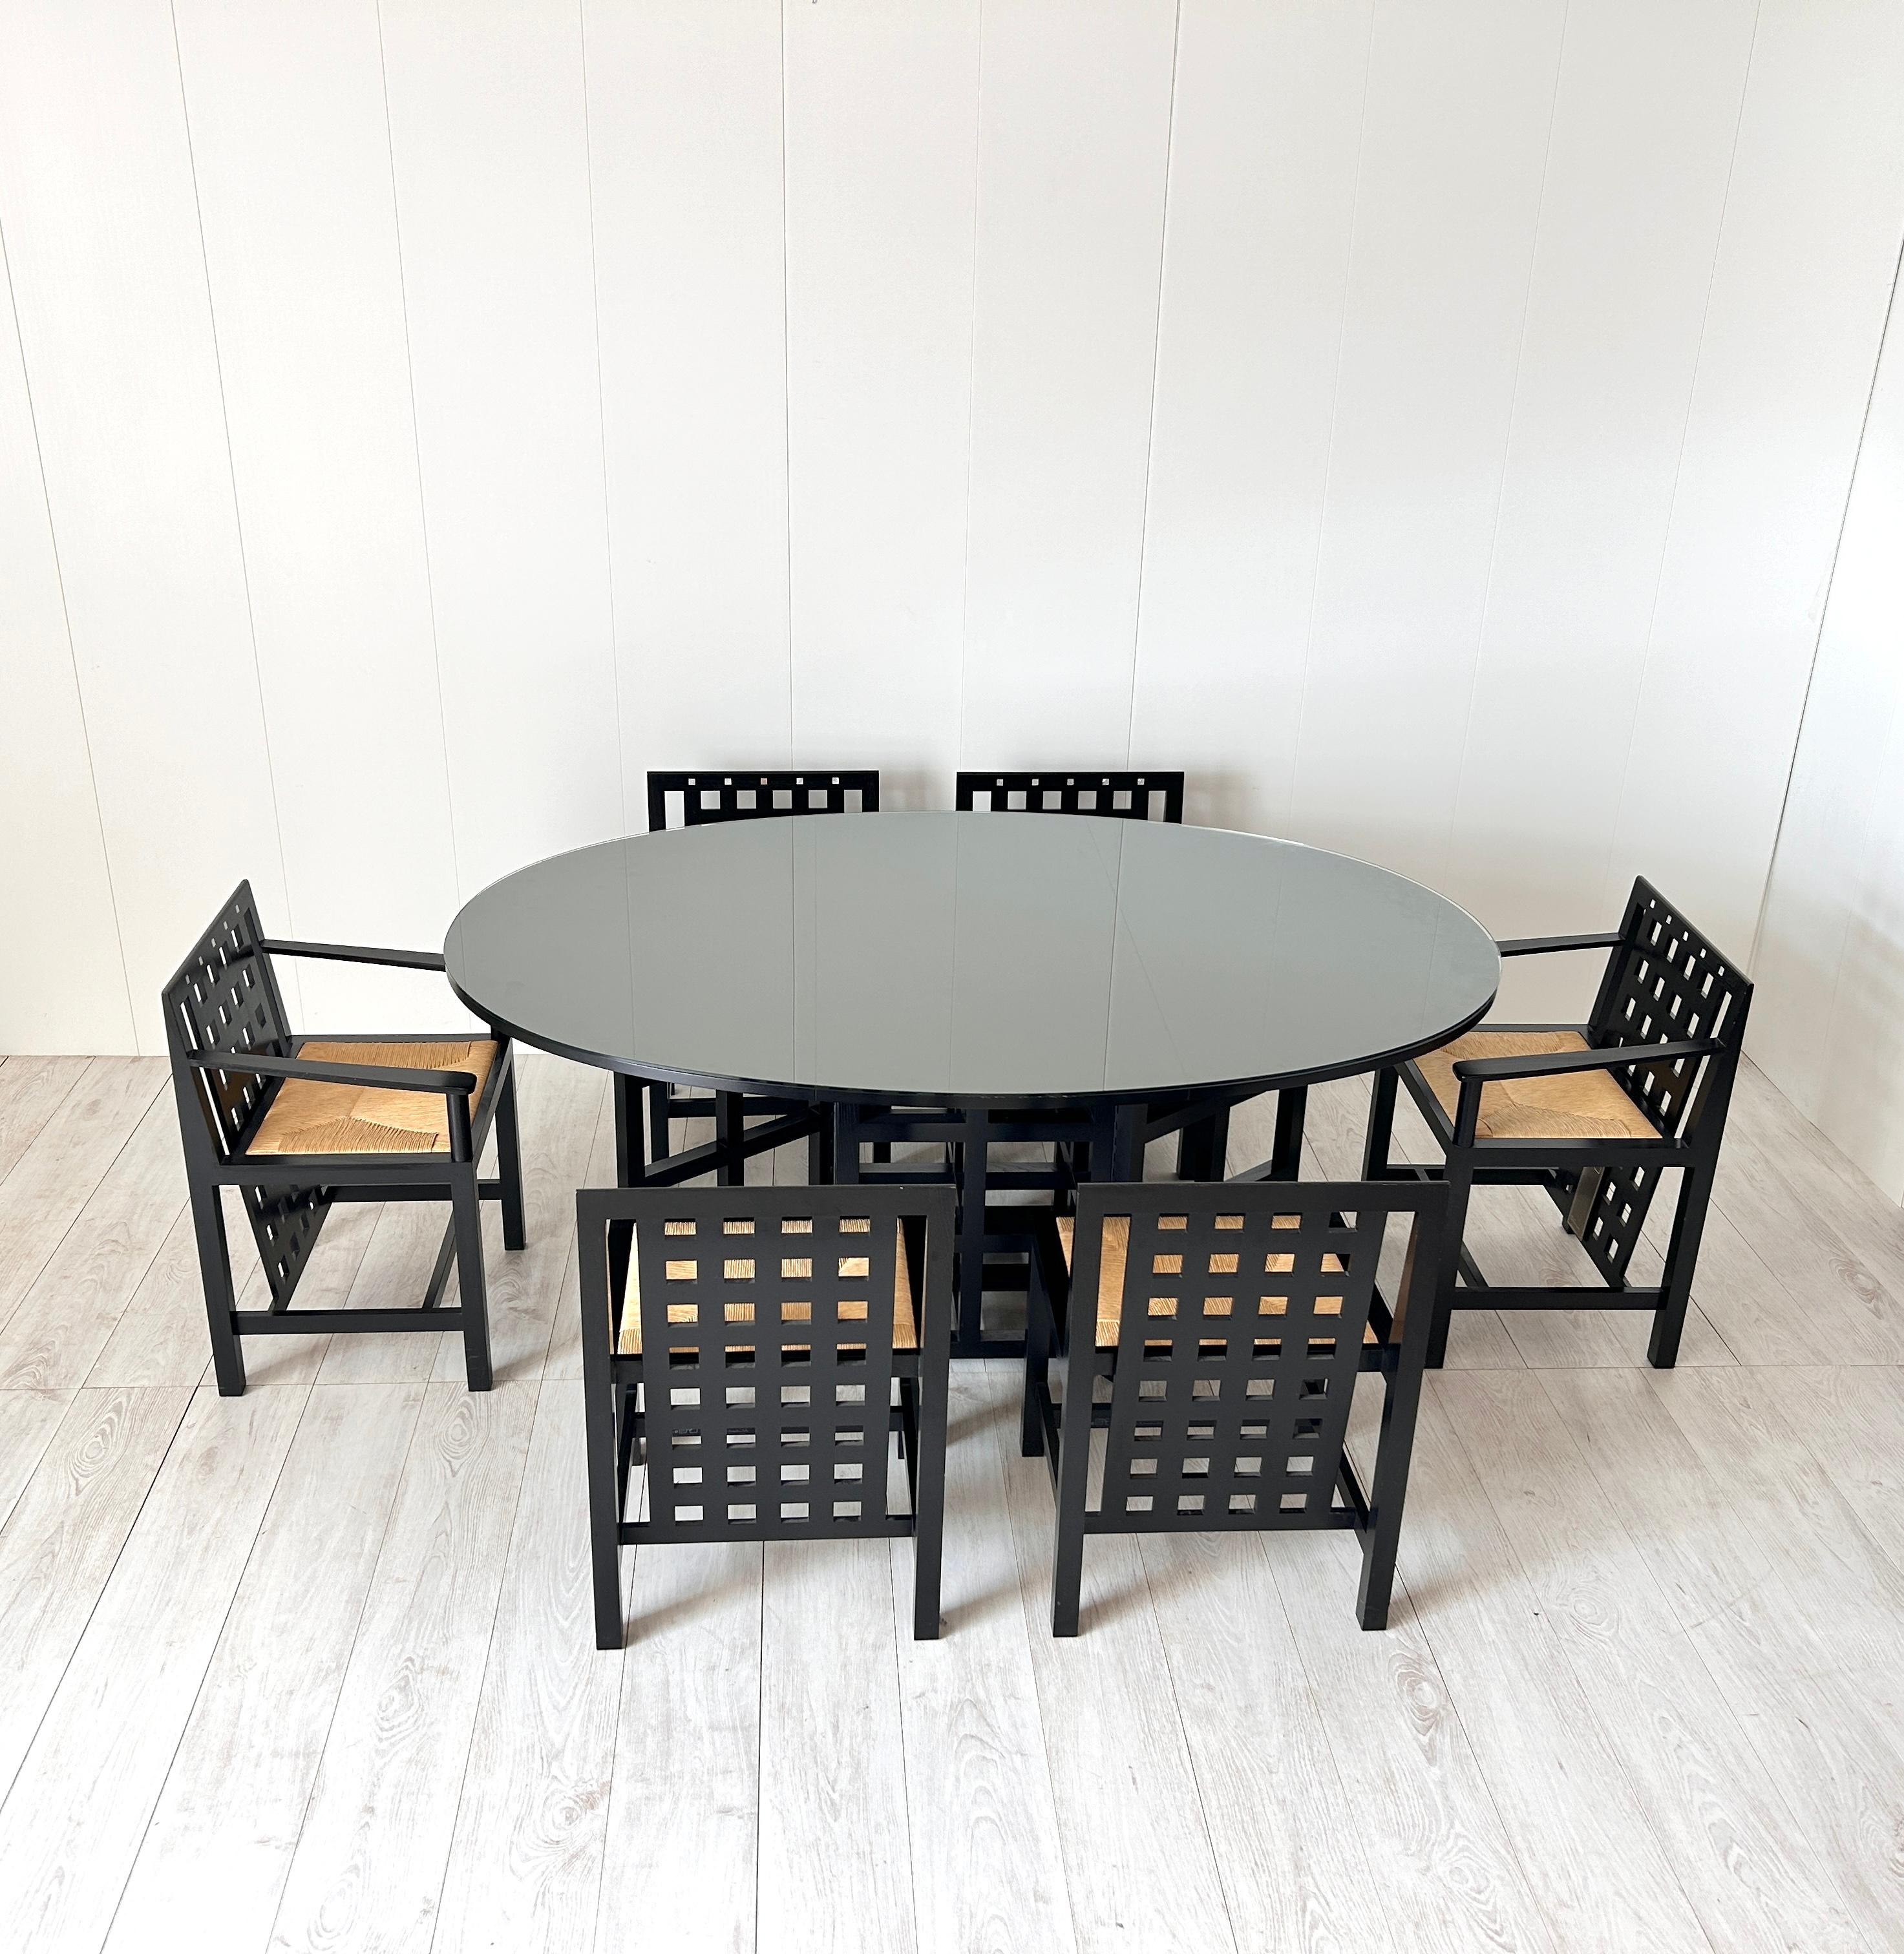 Raro set da pranzo firmato Charles Rennie Mackintosh e prodotto da Cassina nel 1975
Tavolo di forma ovale di importanti dimensioni 
Sei sedie di cui due con braccioli (capitavola)
Tutte le sedie sono marcate e numerate
Etichetta originale